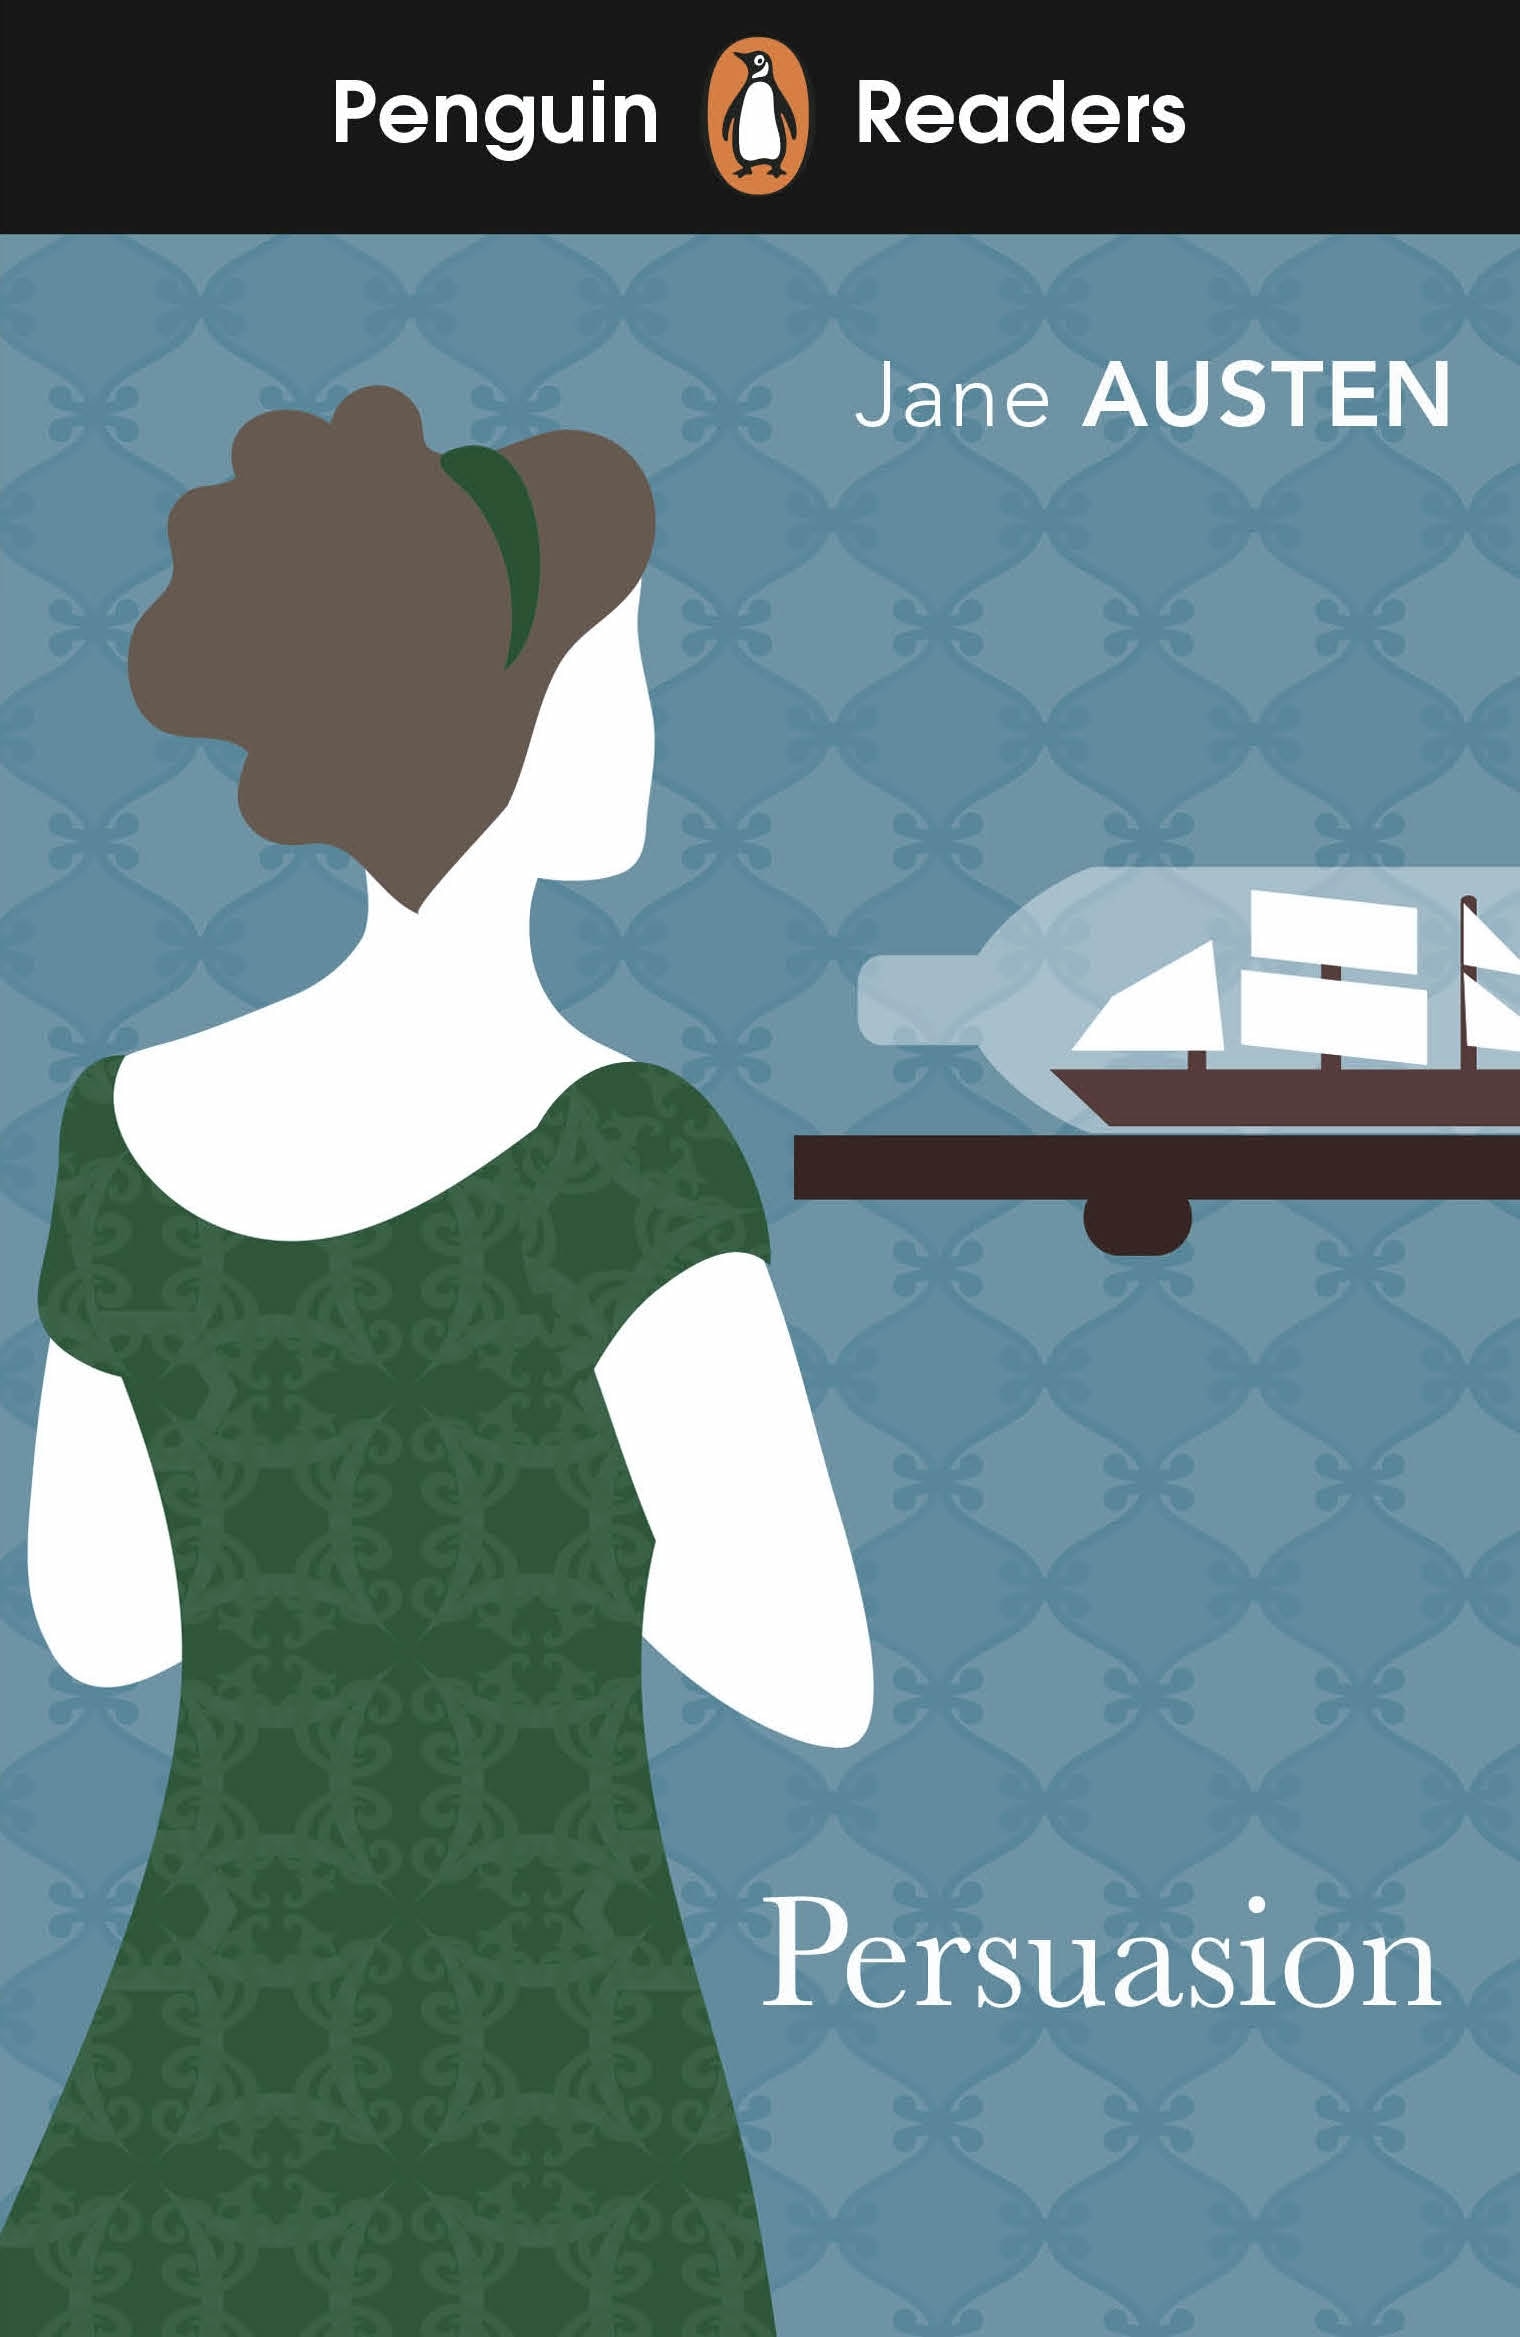 Book “Penguin Readers Level 3: Persuasion (ELT Graded Reader)” by Jane Austen — February 2, 2023